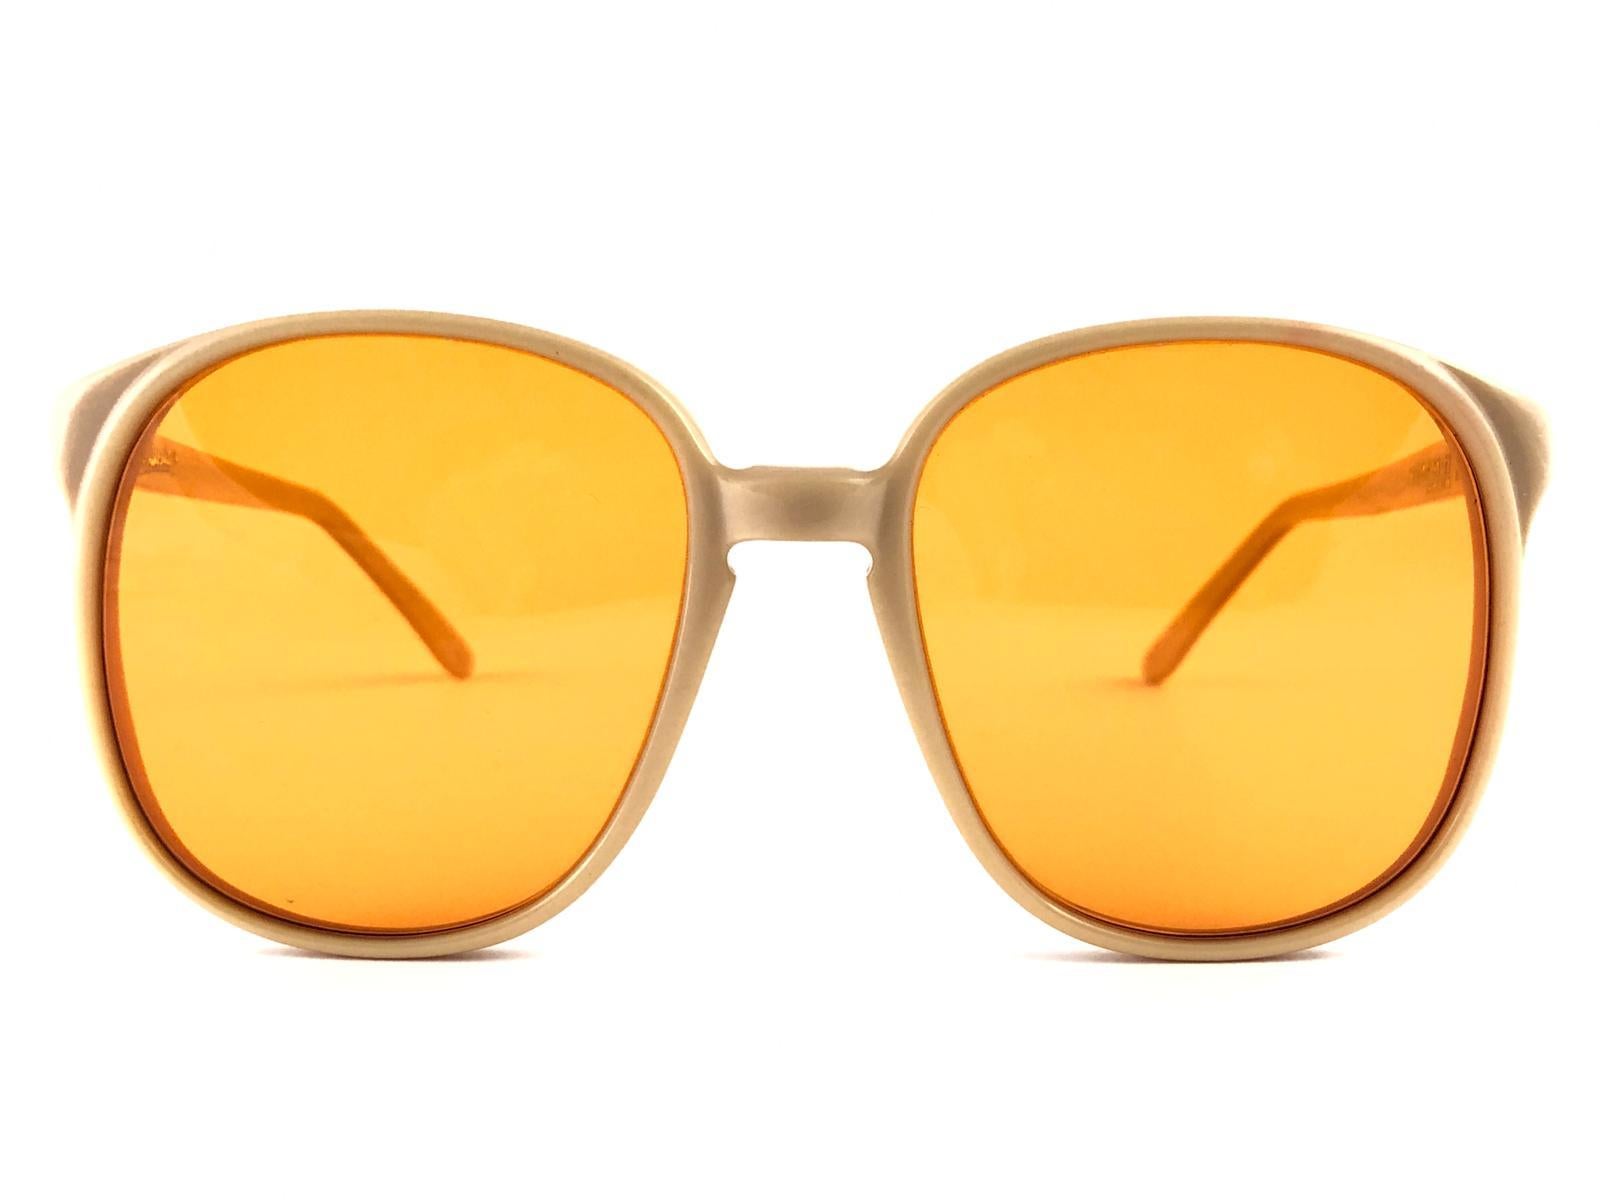 Paire de lunettes de soleil Oliver Goldsmith surdimensionnée.  

Monture neuve, non portée, contenant une paire de lentilles mandarines.   

 Cette paire présente des signes mineurs d'usure dus au stockage.

Fabriqué à la main en